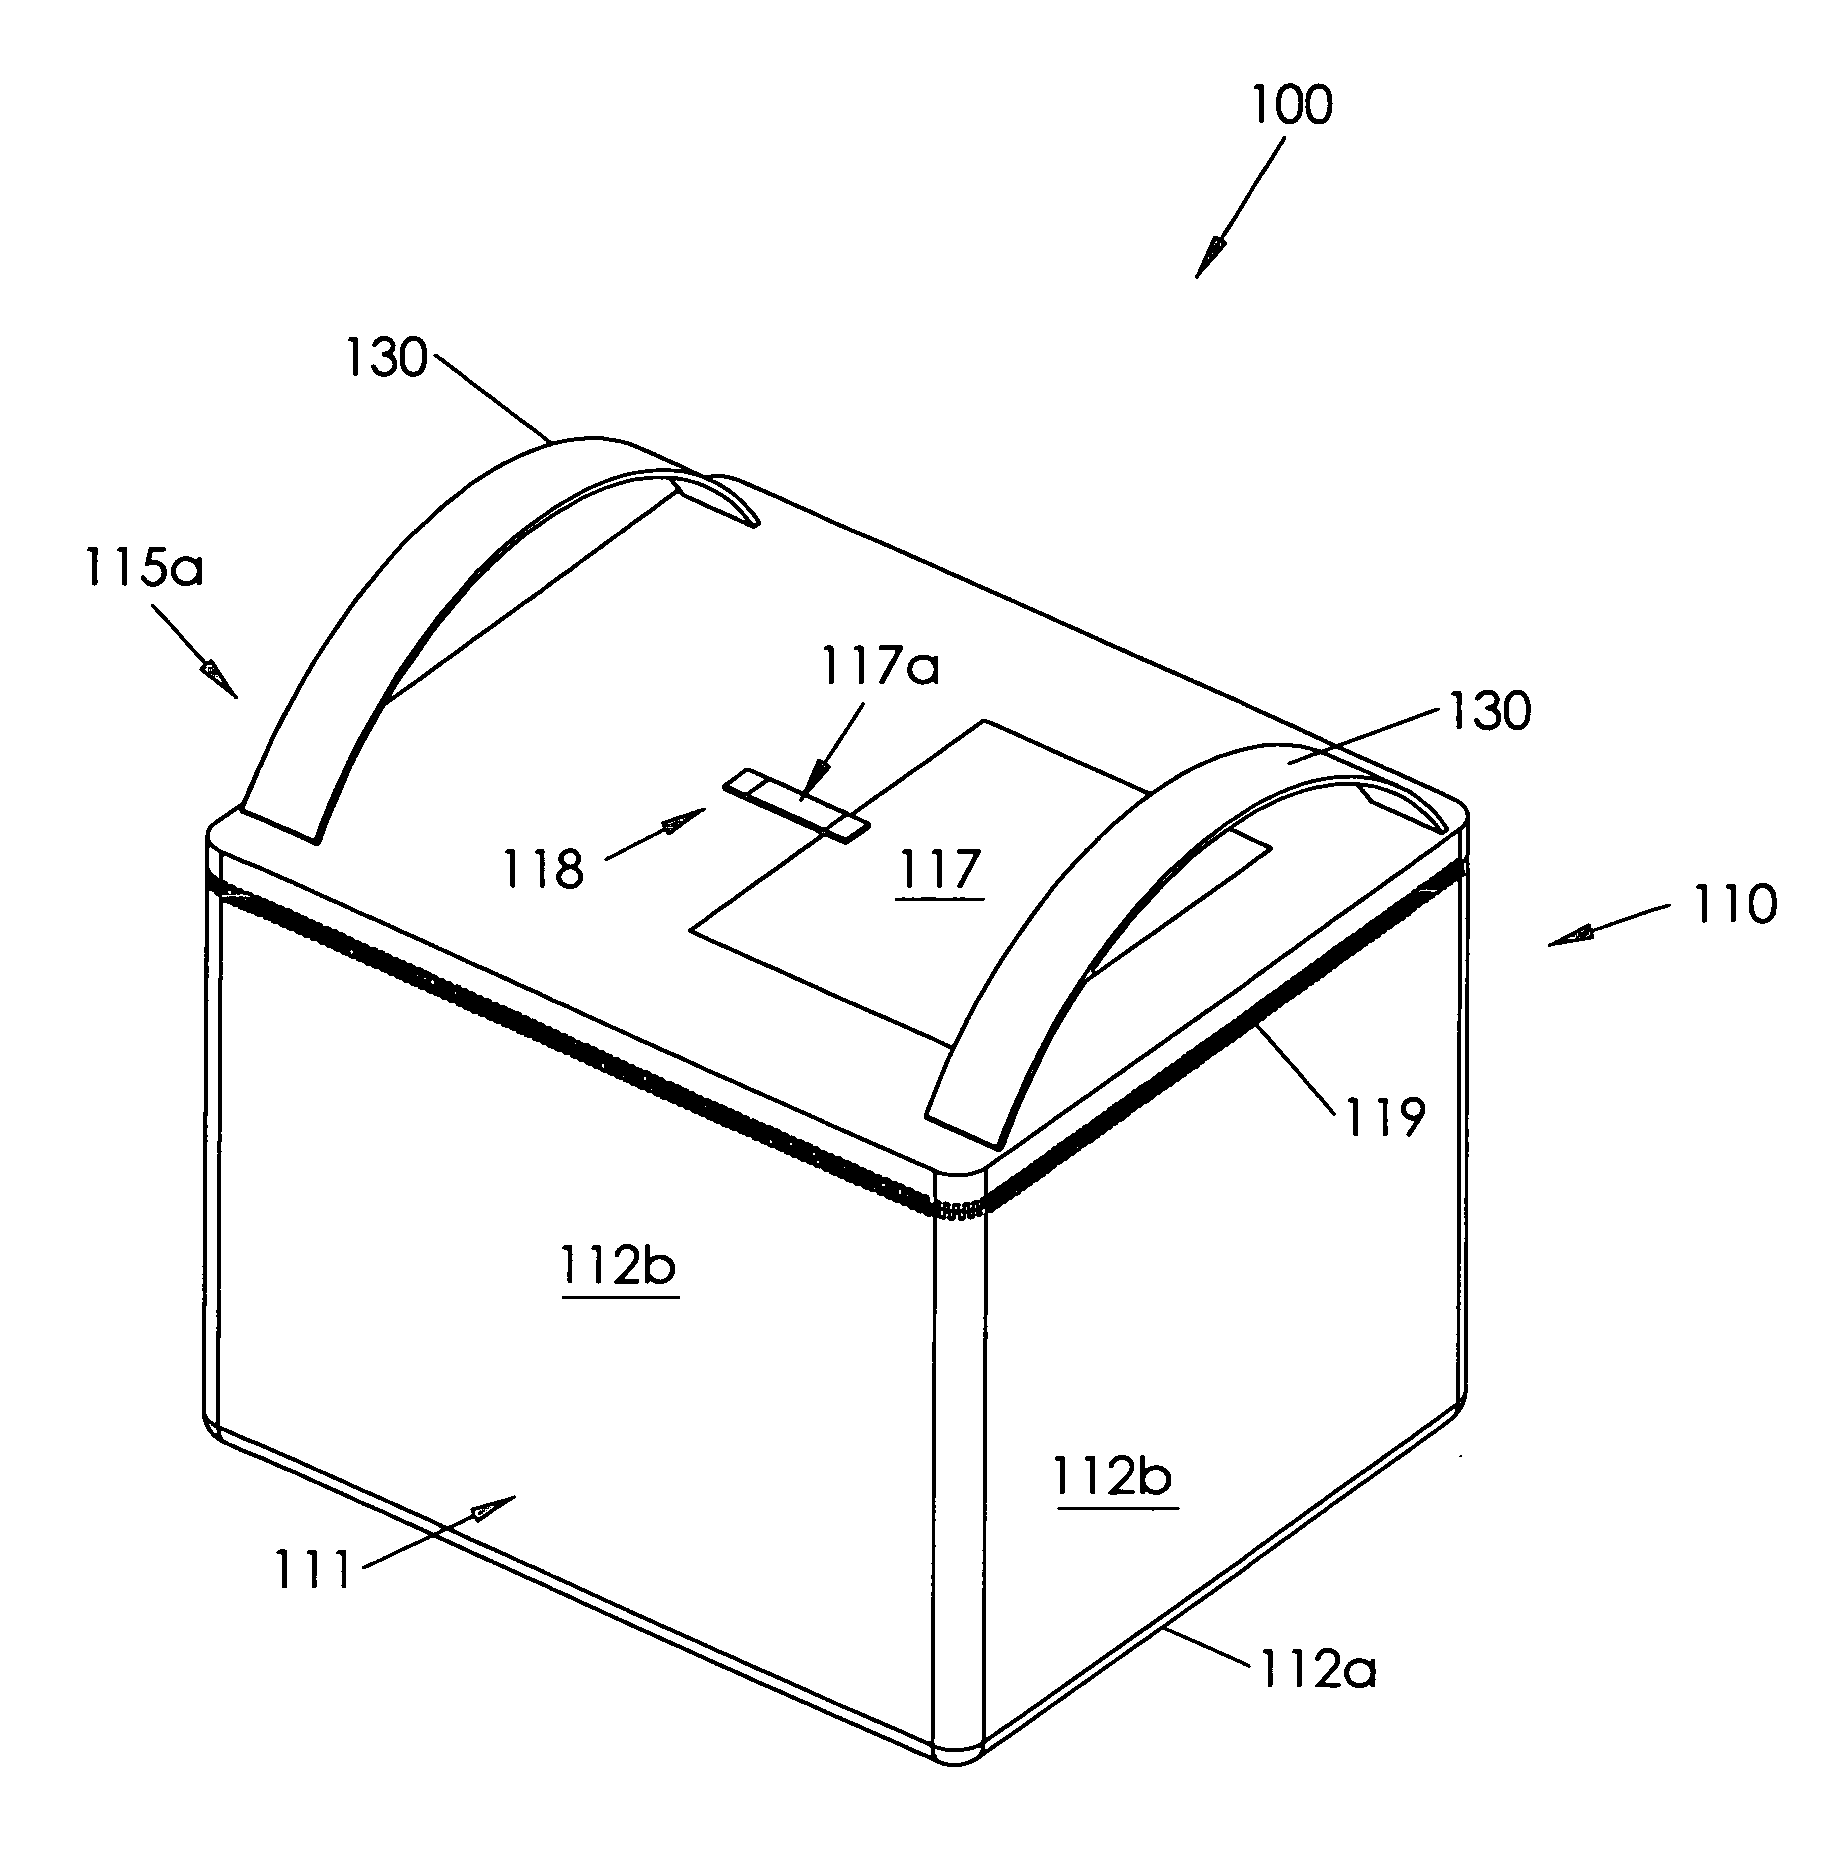 Insulating container